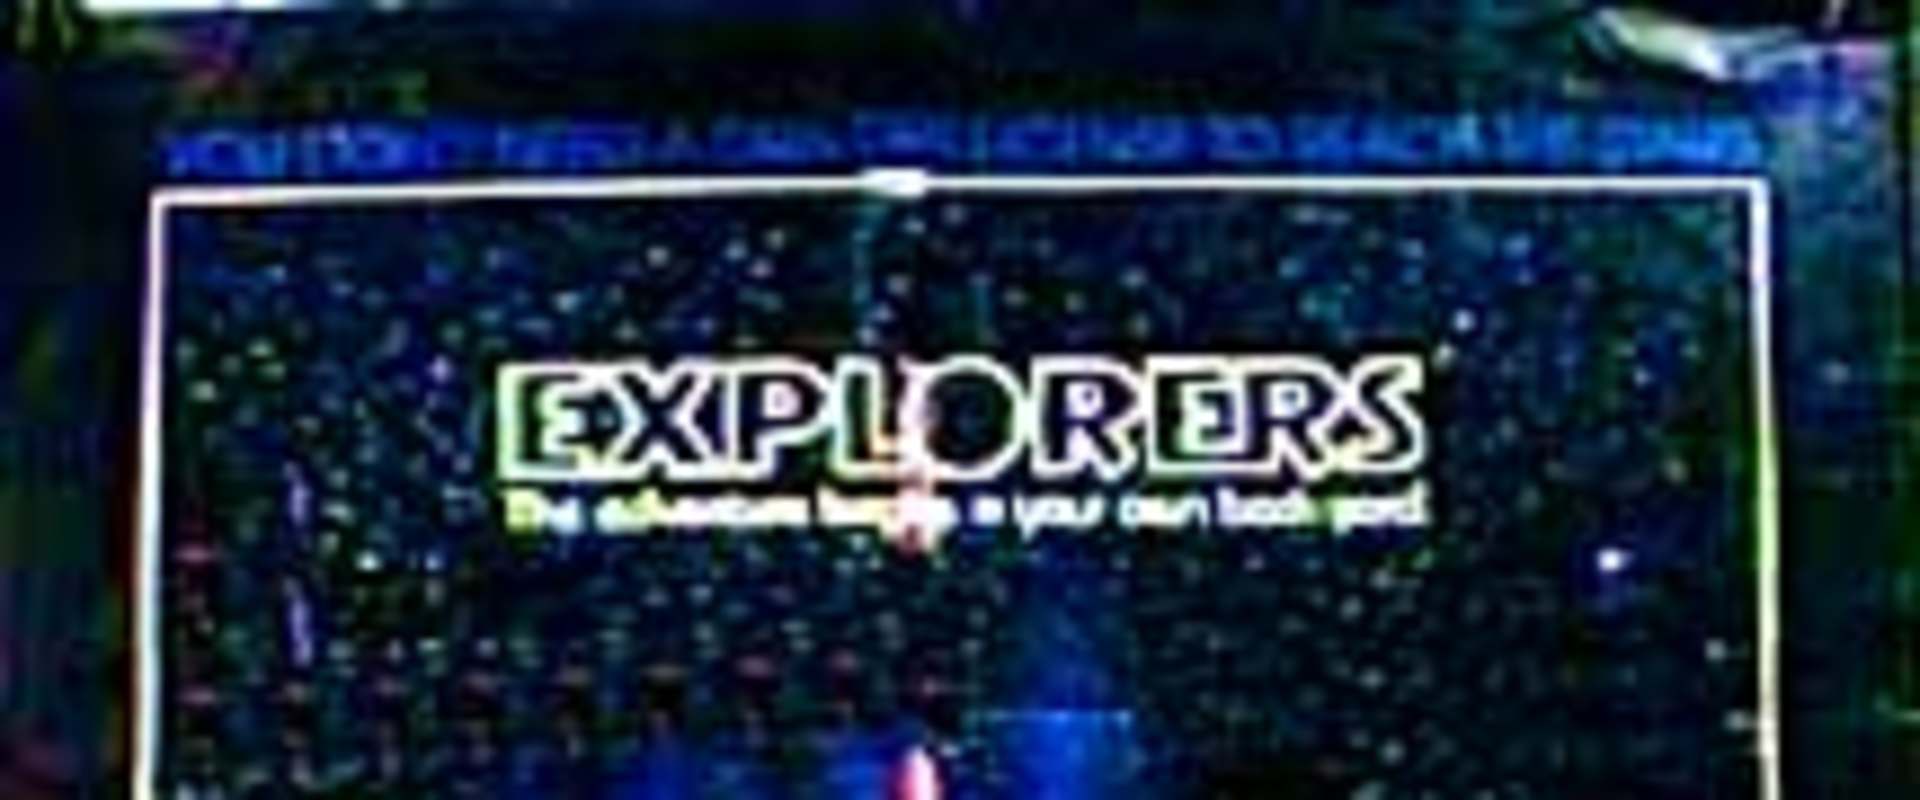 Explorers background 1